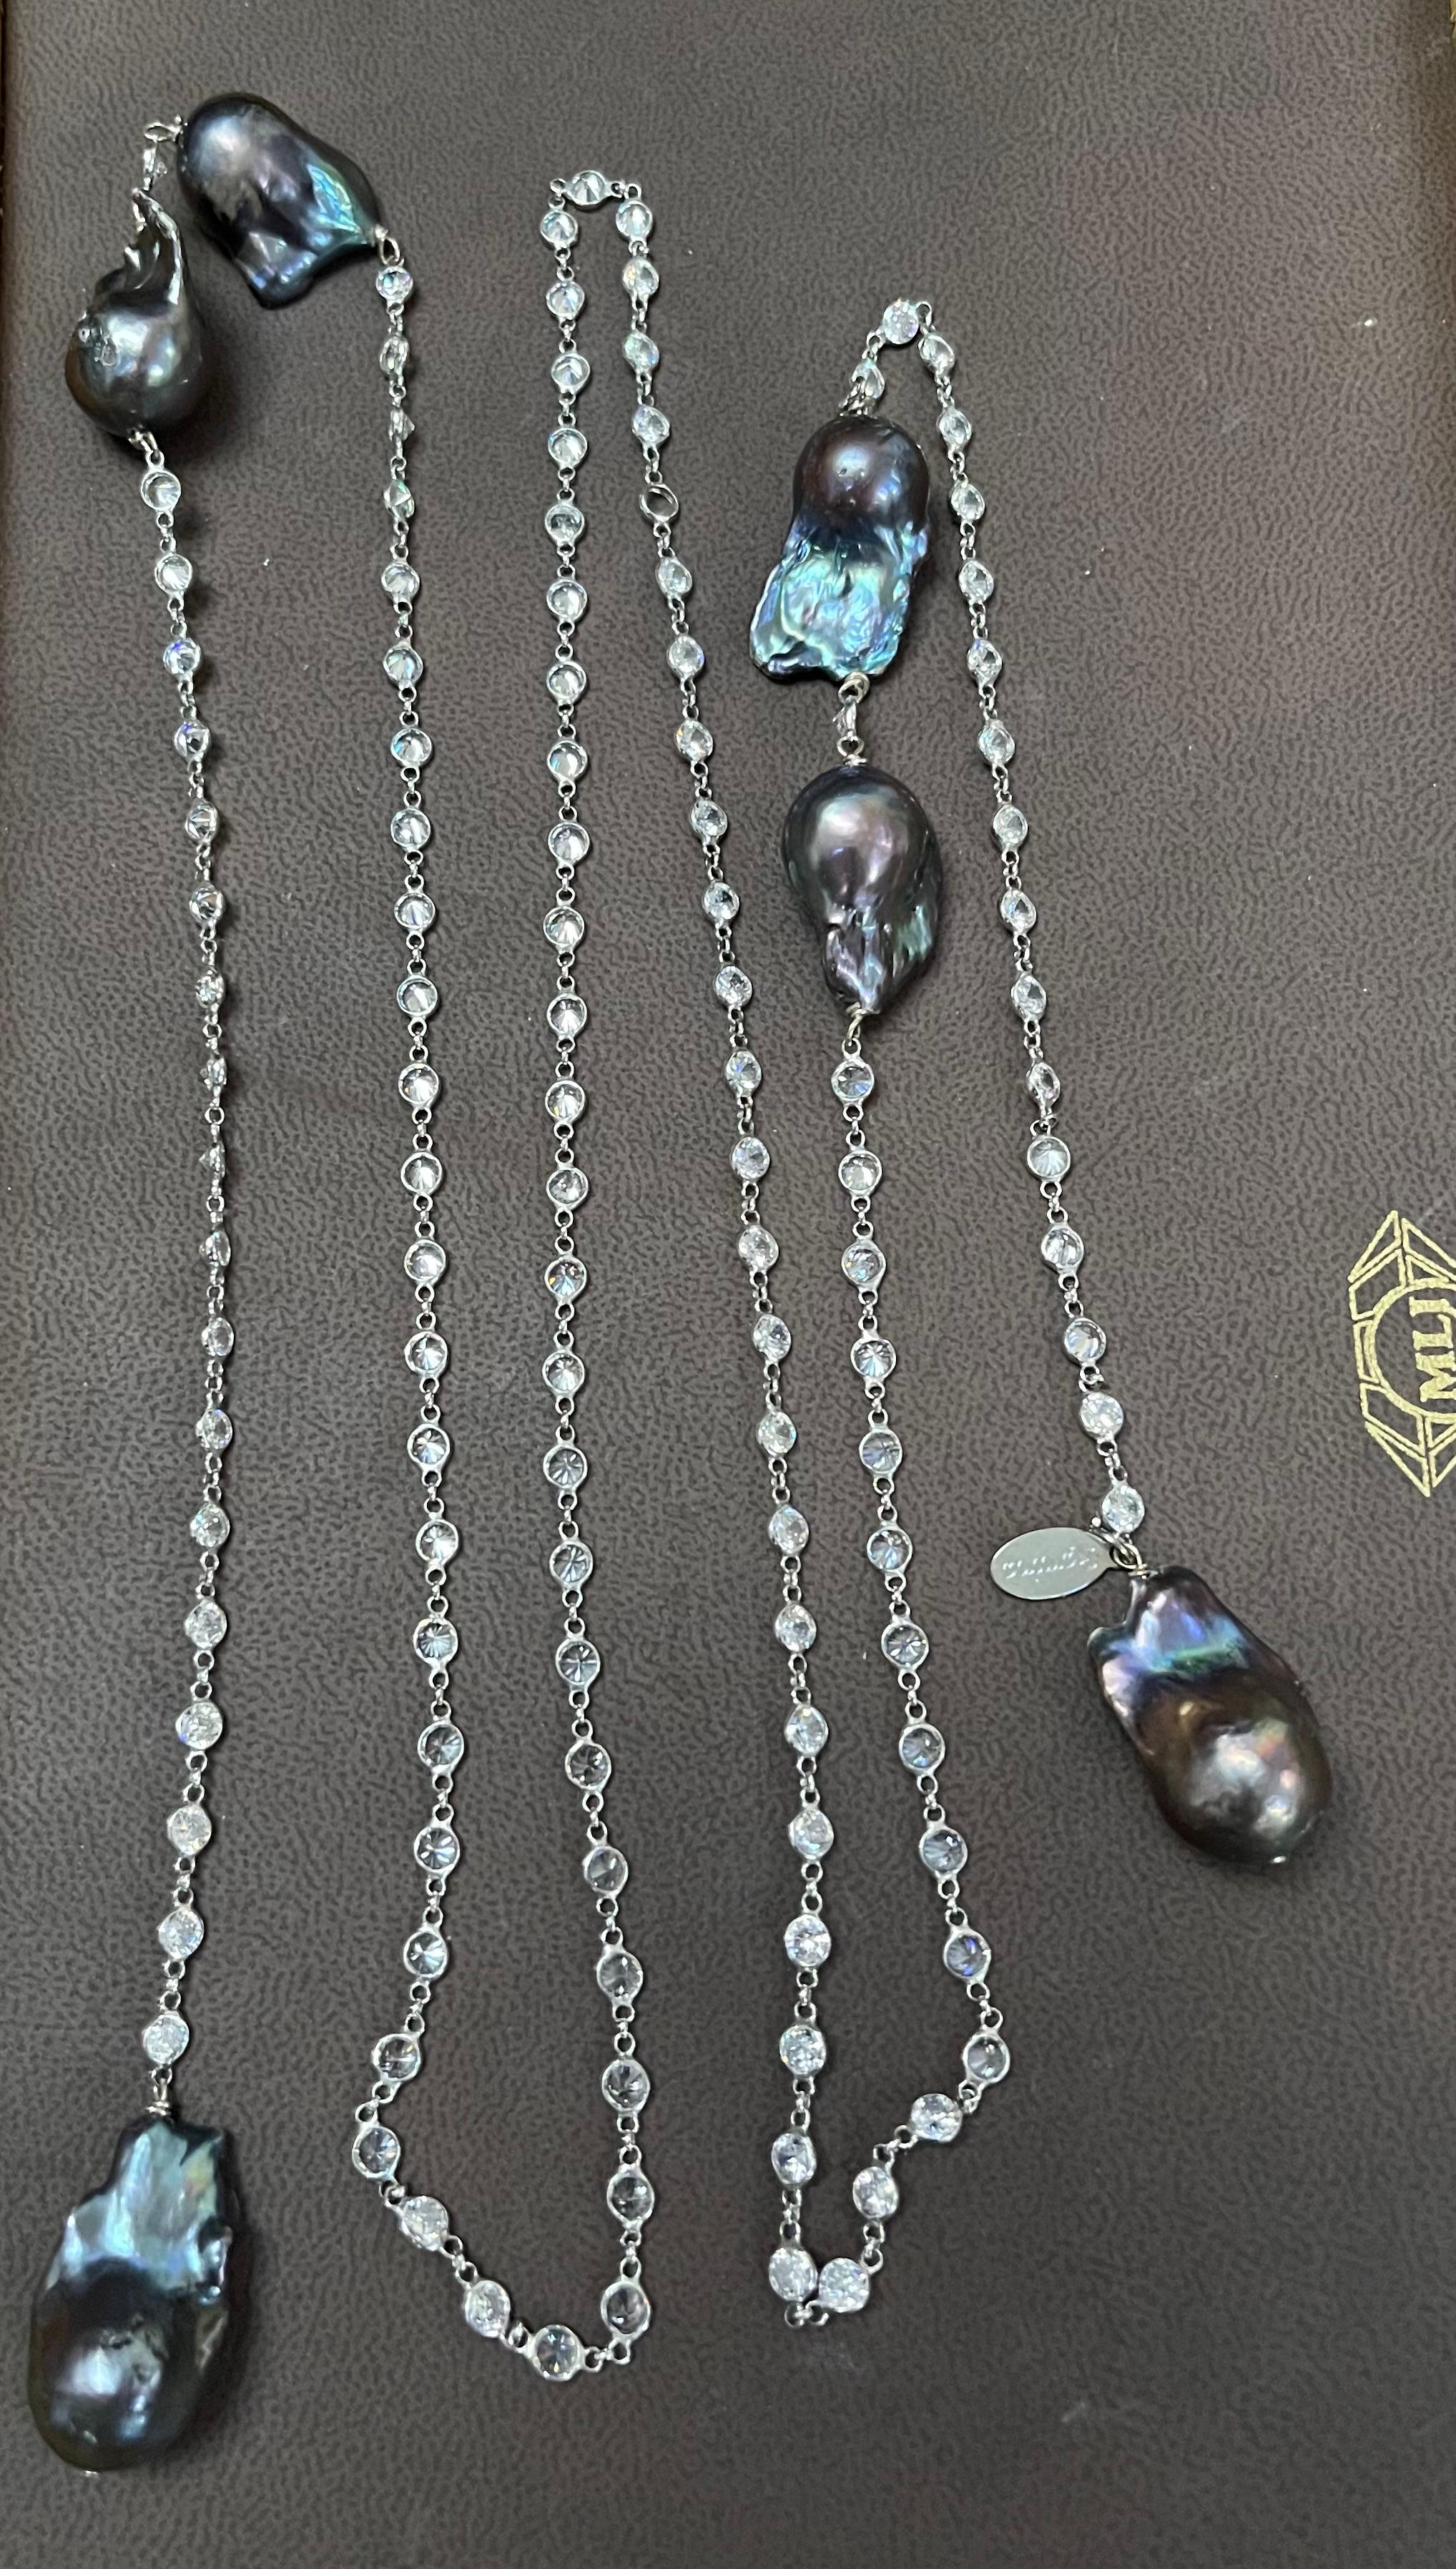 Sehr modisch Sieht aus wie Diamant nach Meter oder STATION Halskette 

 Halskette mit glänzenden Zirkonia,  Alle Steine  sind BEZEL-SET, sie sind sehr eng beieinander 
Erstaunliche Schönheit zu einem sehr günstigen Preis.
signiertes Designerstück